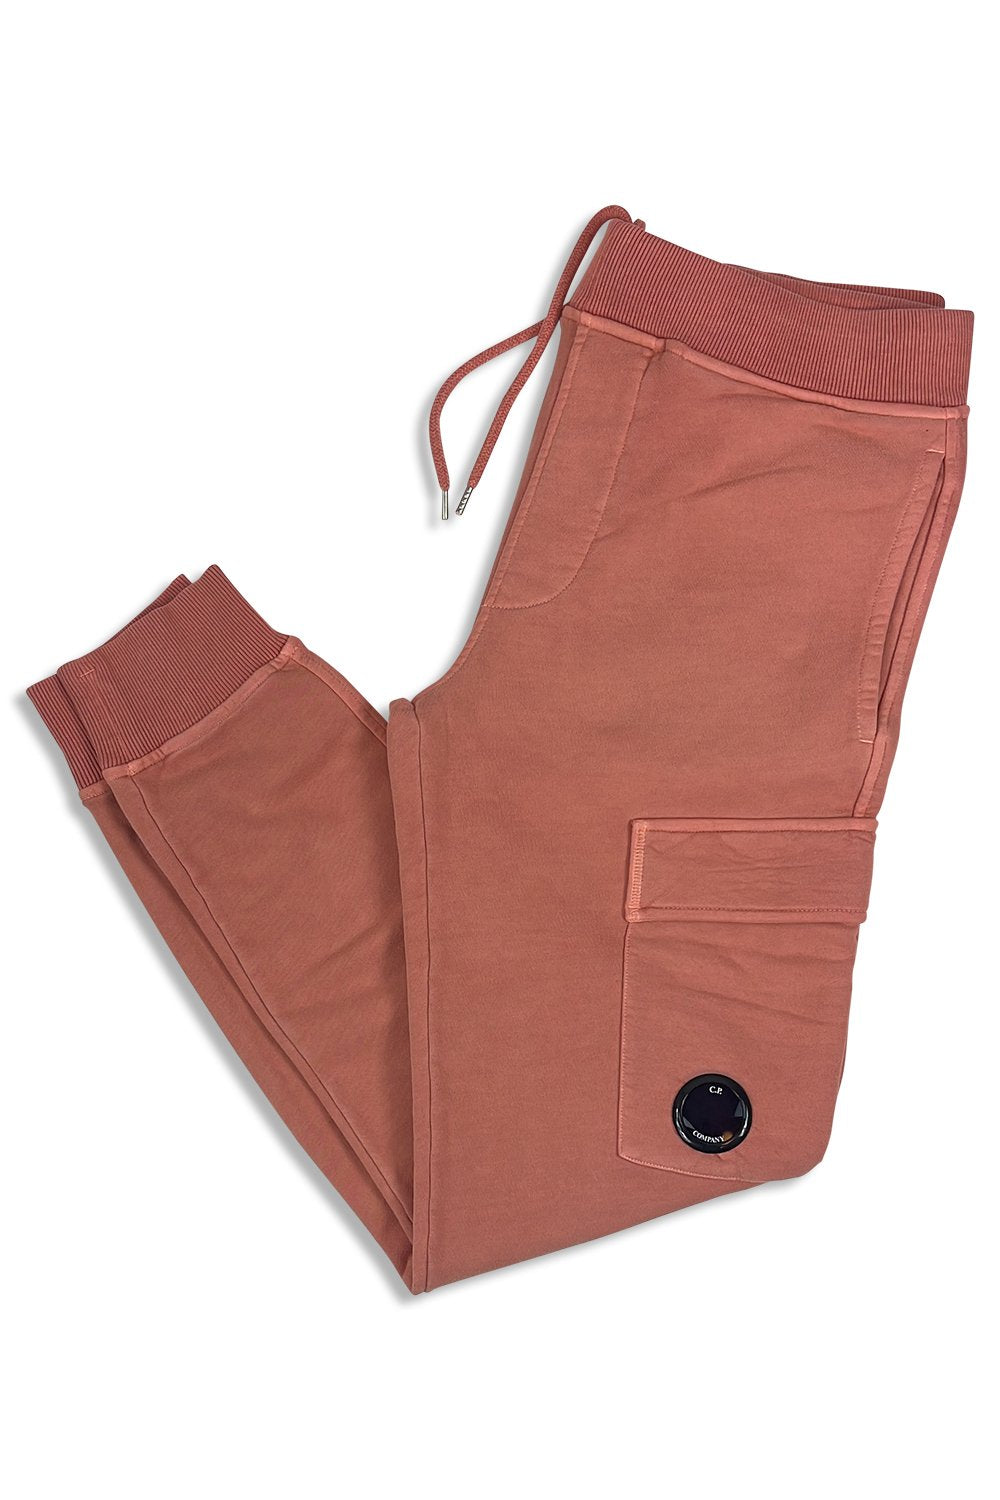 Men's C.P. Company Lens-Detail Cotton Cedar Wood Jogger pants